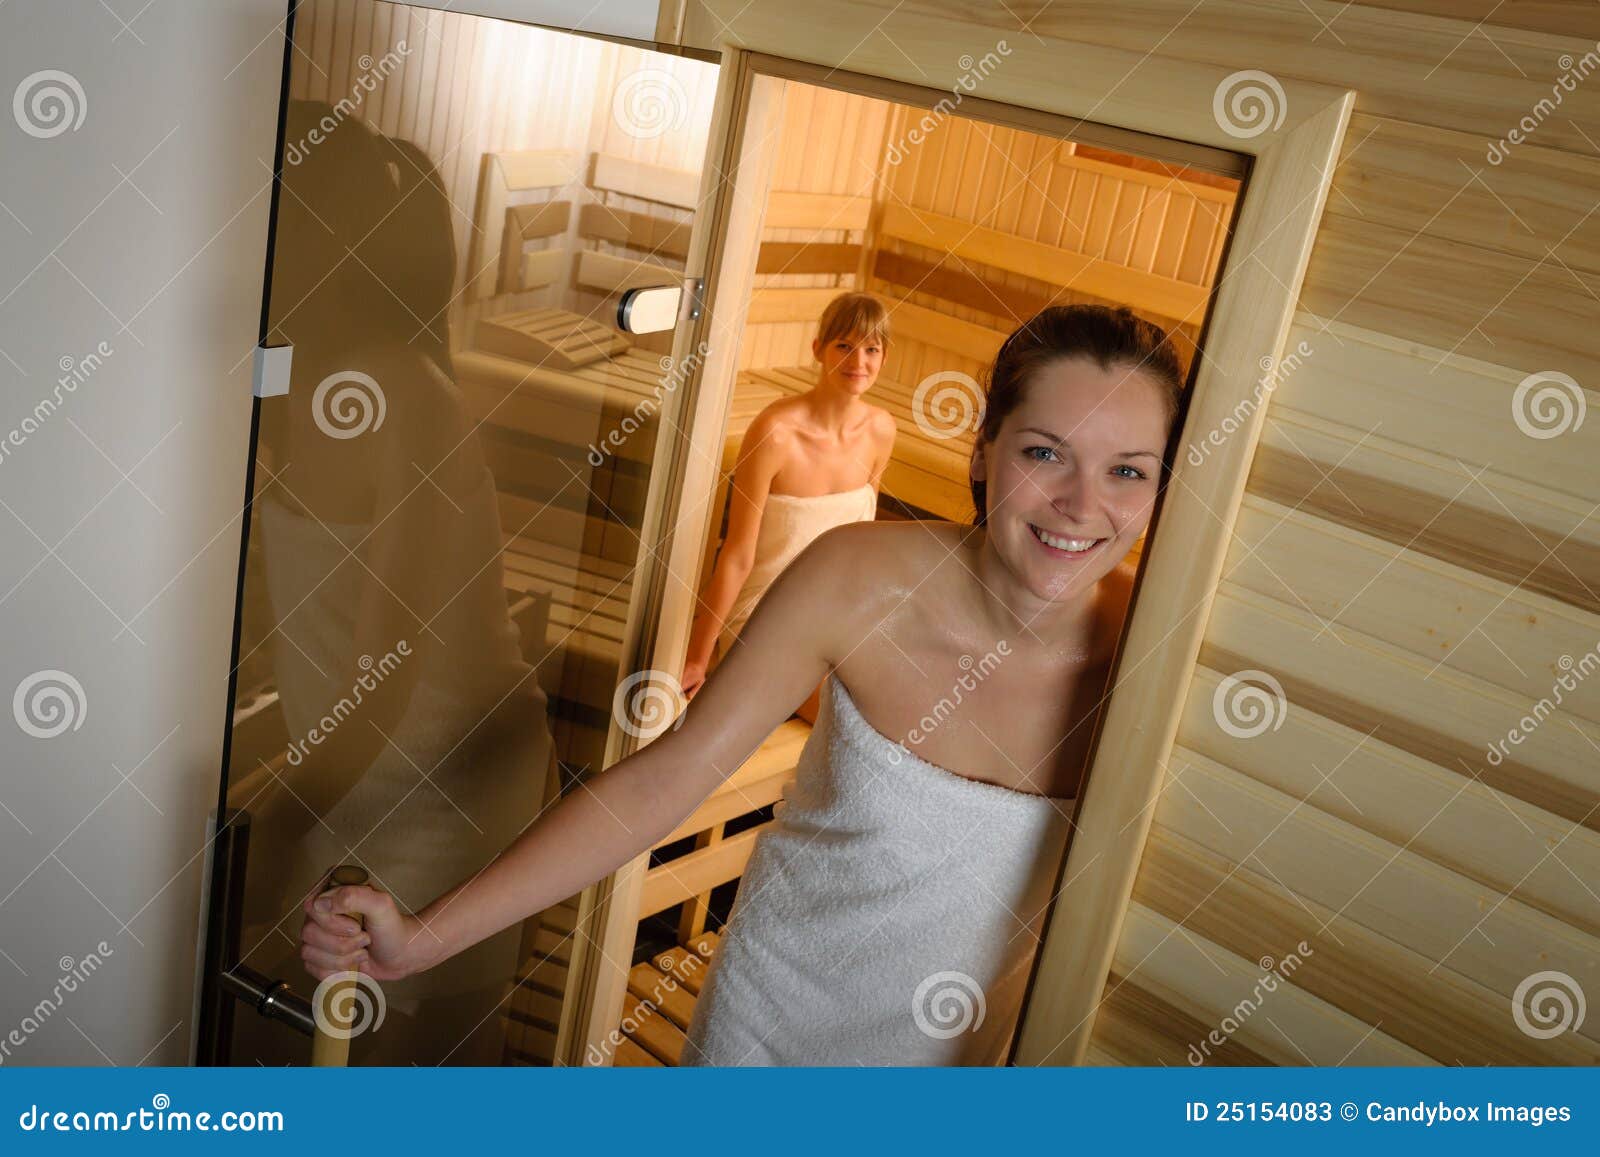 подглядывание за голыми в общественной бане фото 106